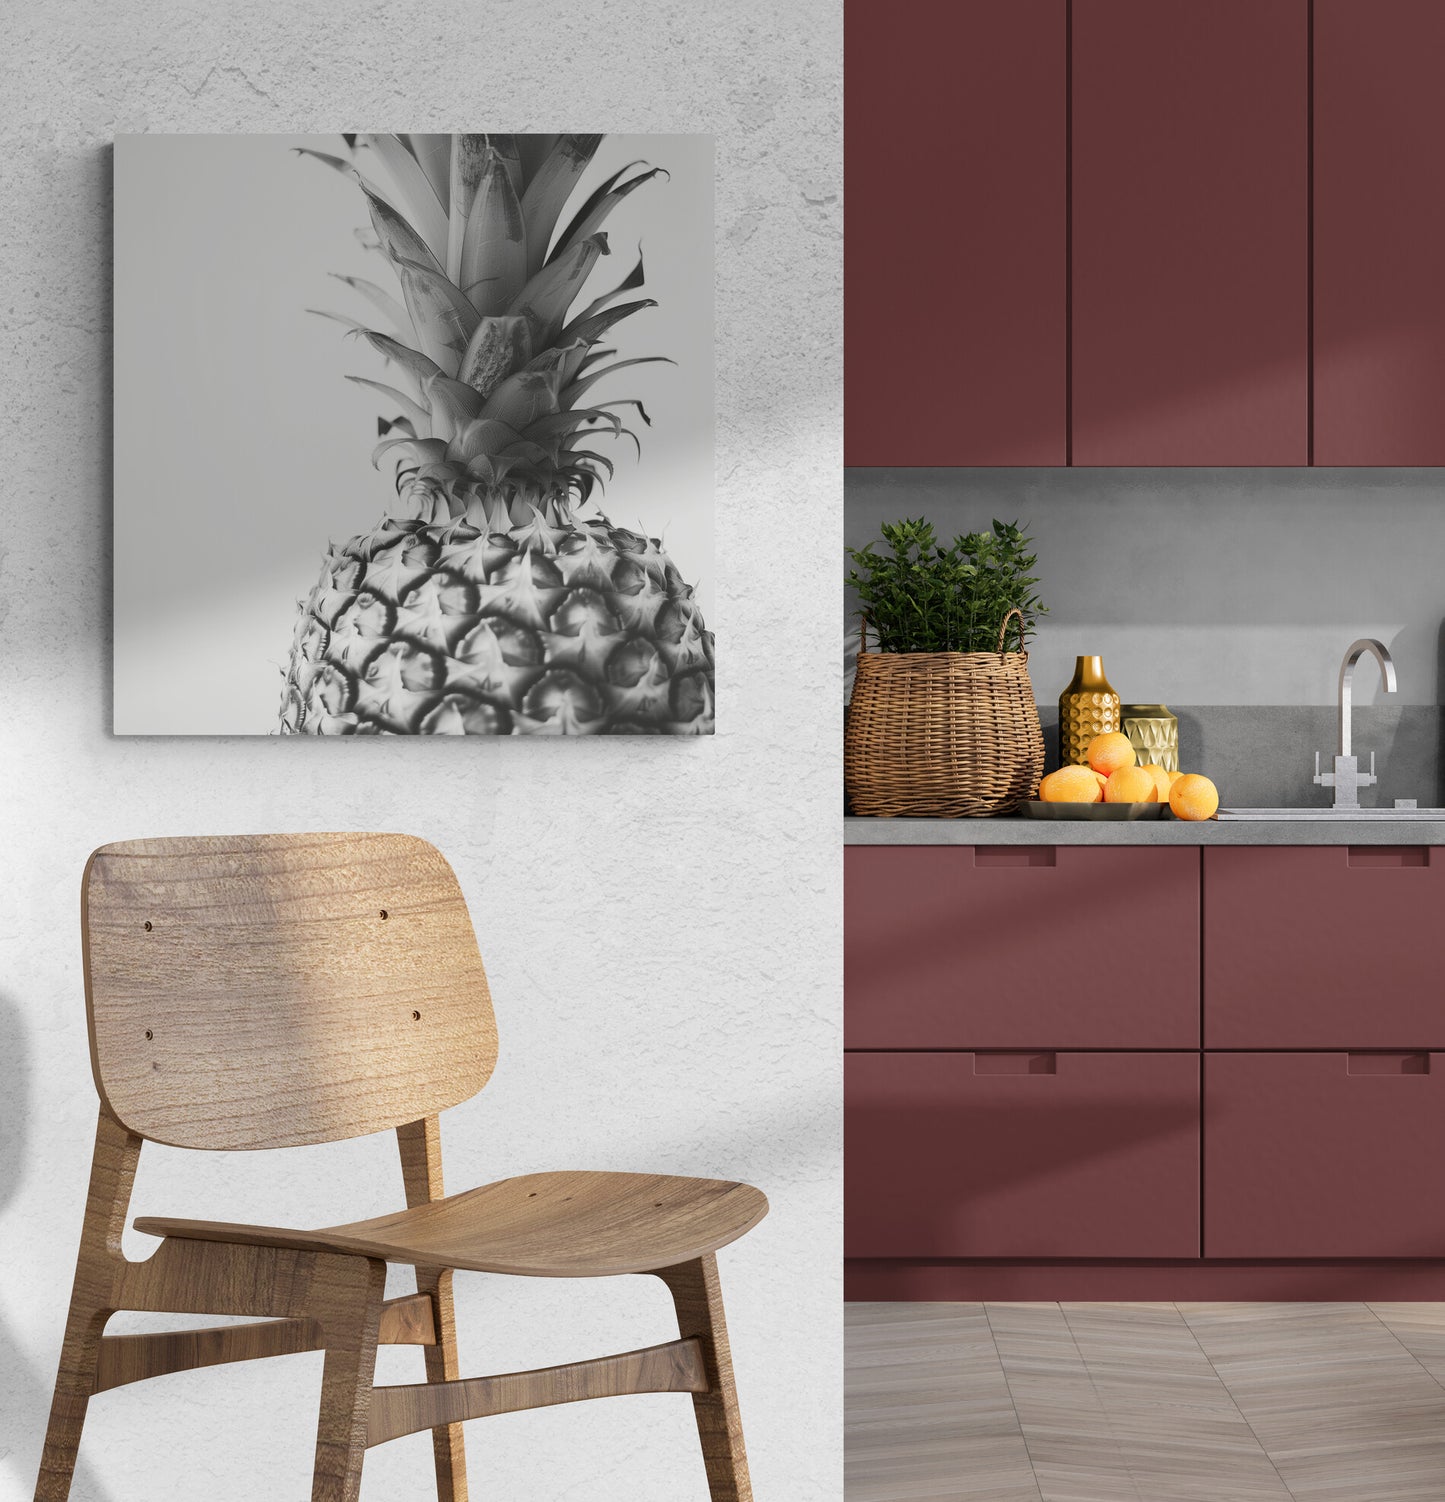 cuisine, mur blanc texturé, chaise haute en bois, meuble de cuisine bordeaux et gris, fruits.